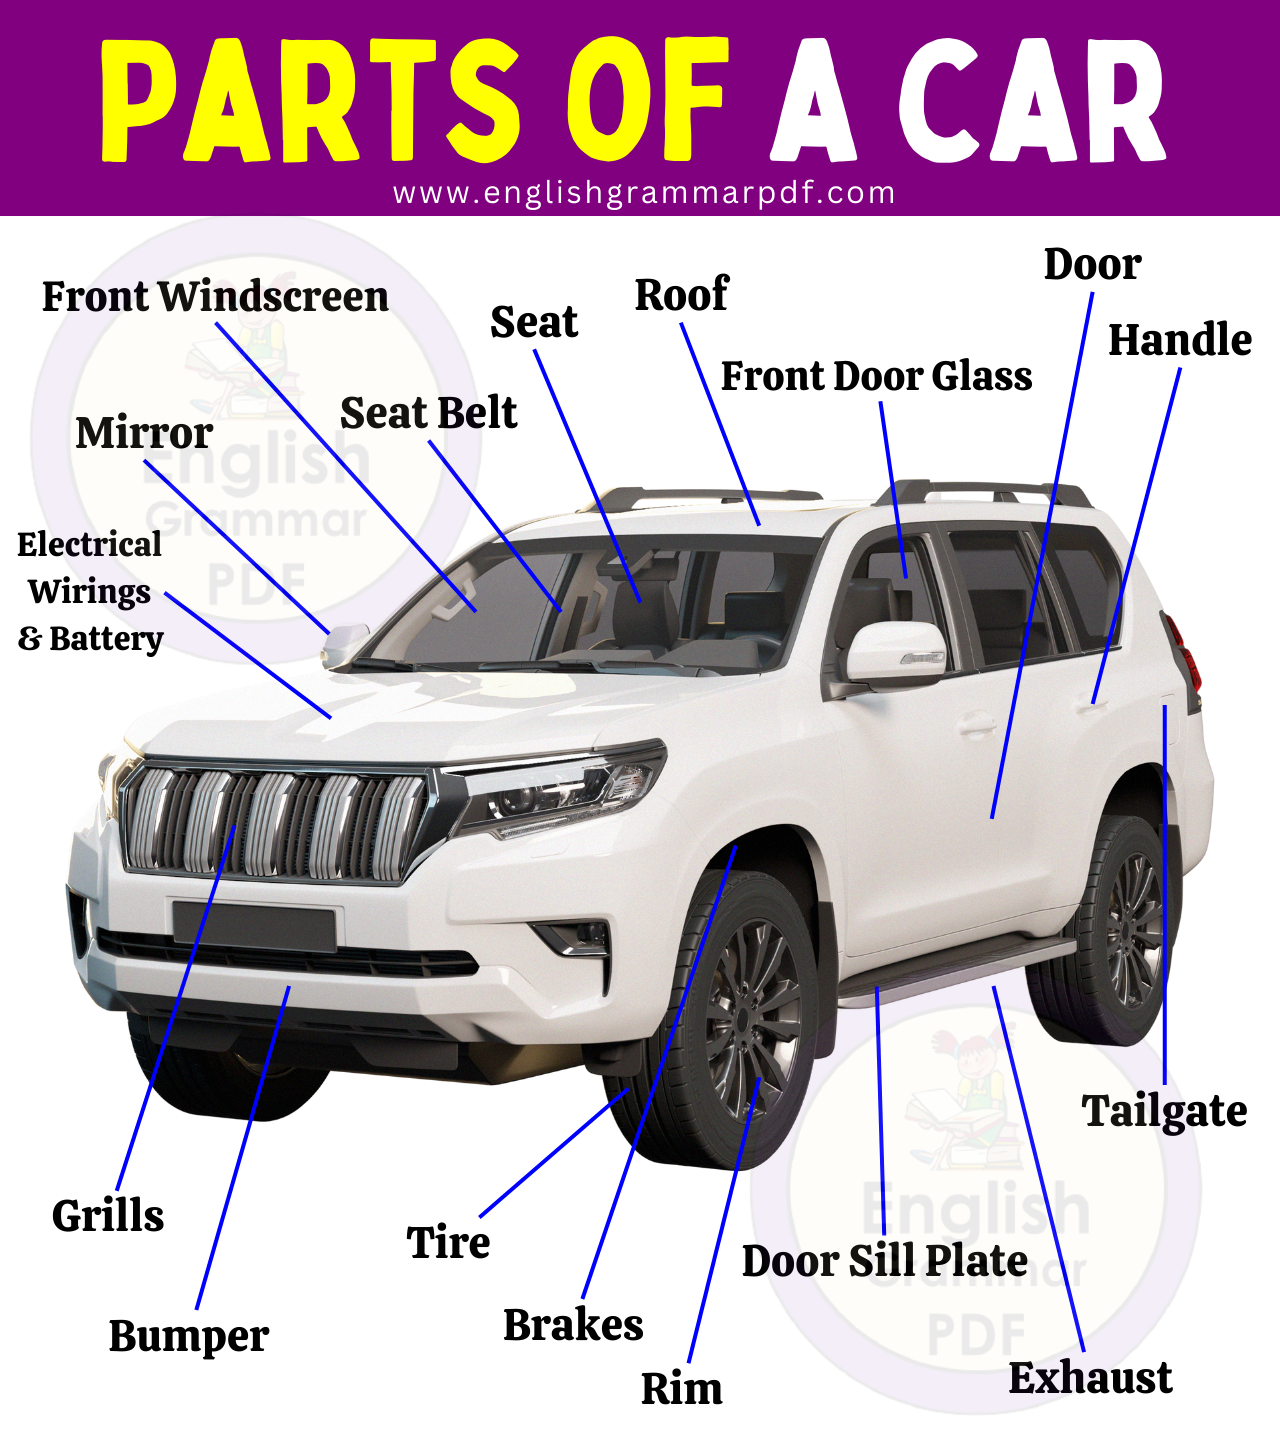 Parts of a car